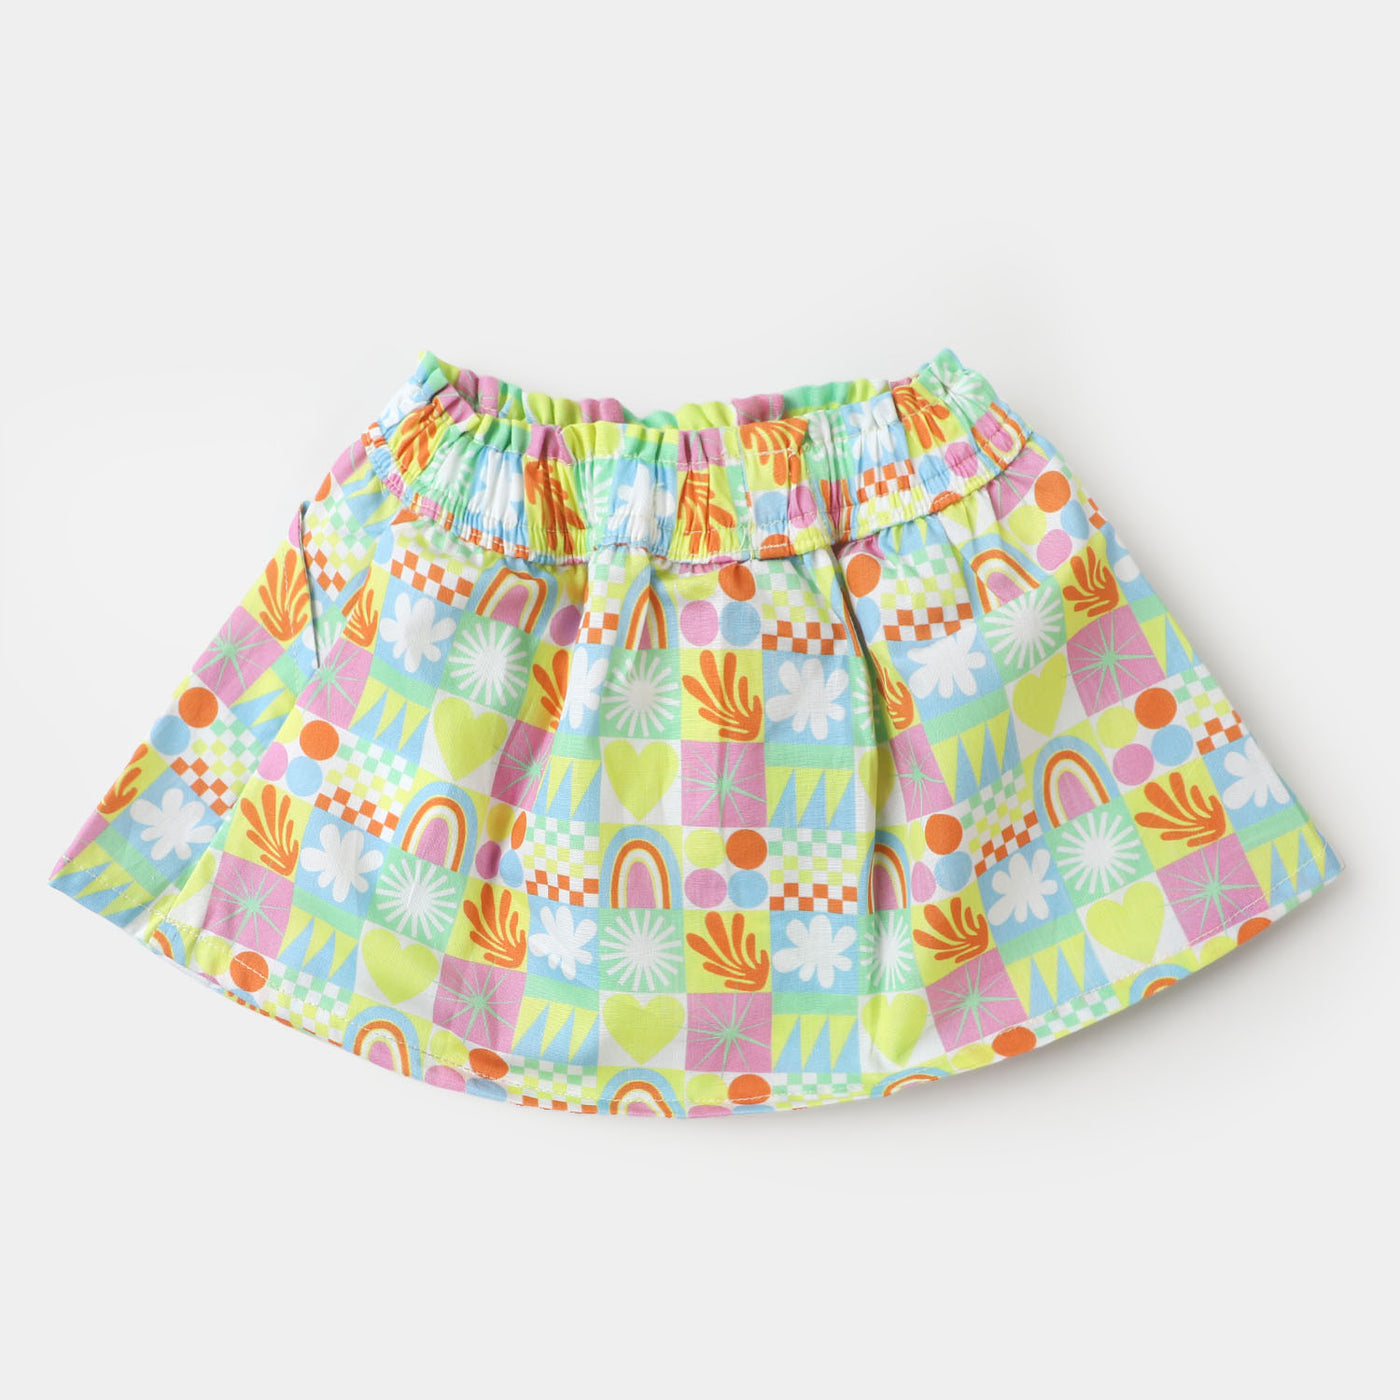 Infant Girls Casual Short Skirt - Multi